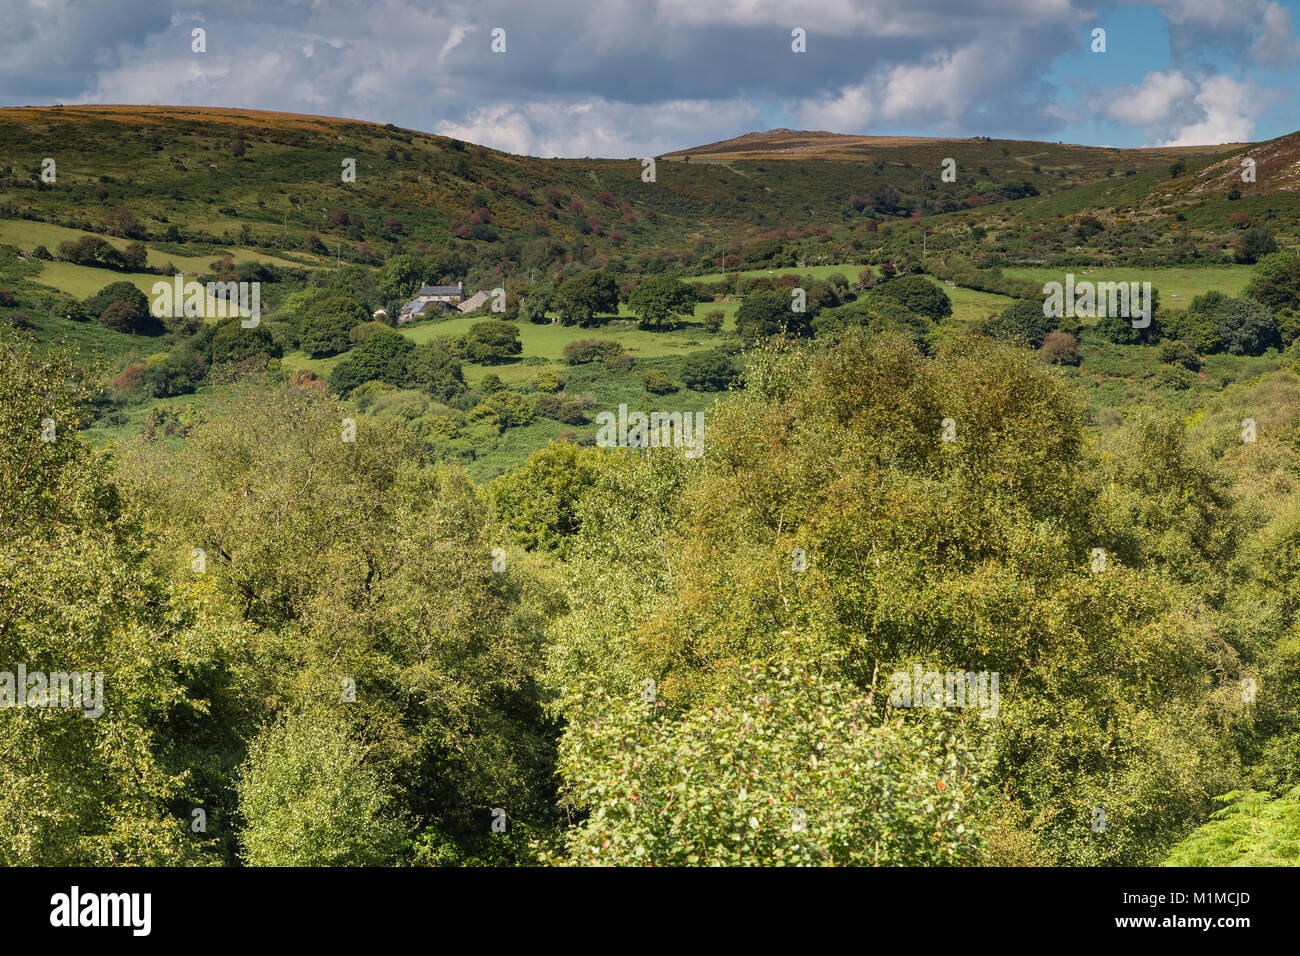 Une image d'une ferme assise dans les collines environnantes de Dartmoor, dans le Devon, Angleterre, Royaume-Uni. Banque D'Images